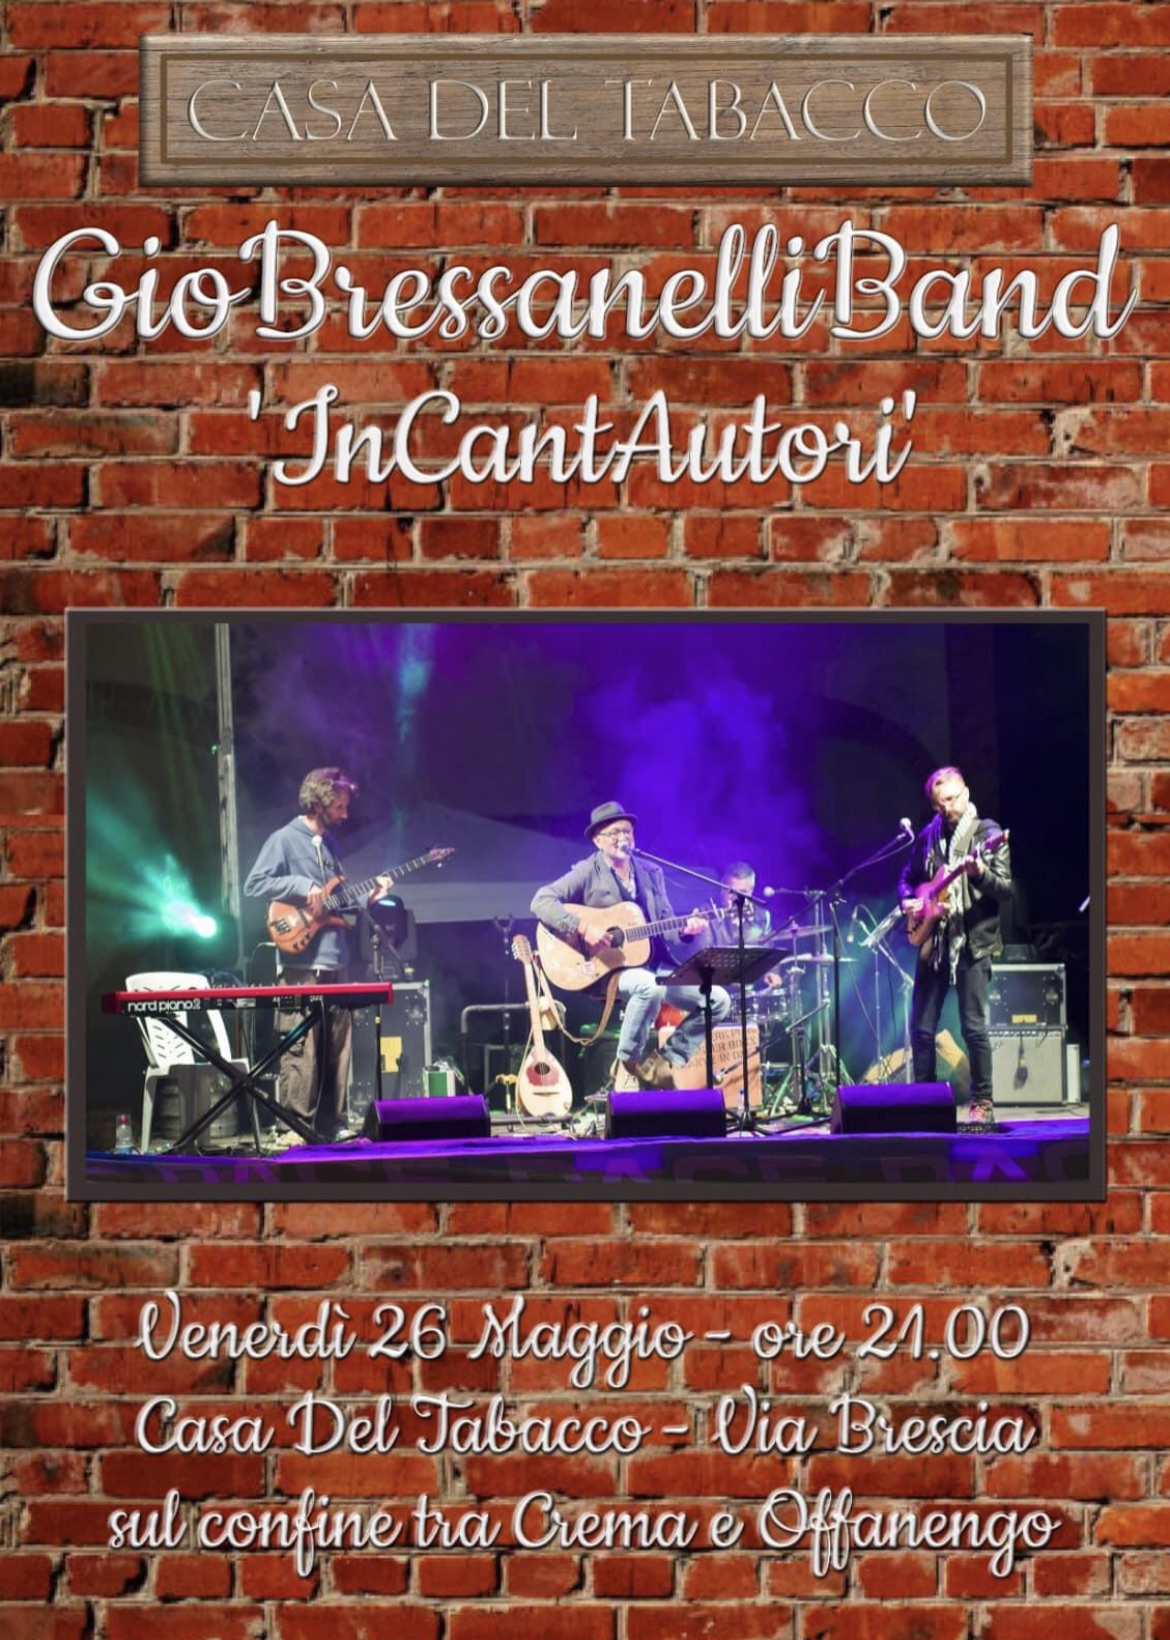 Venerdì sera grande concerto in via Brescia a Crema col cantautore libero Giò Bressanelli e la sua Band …